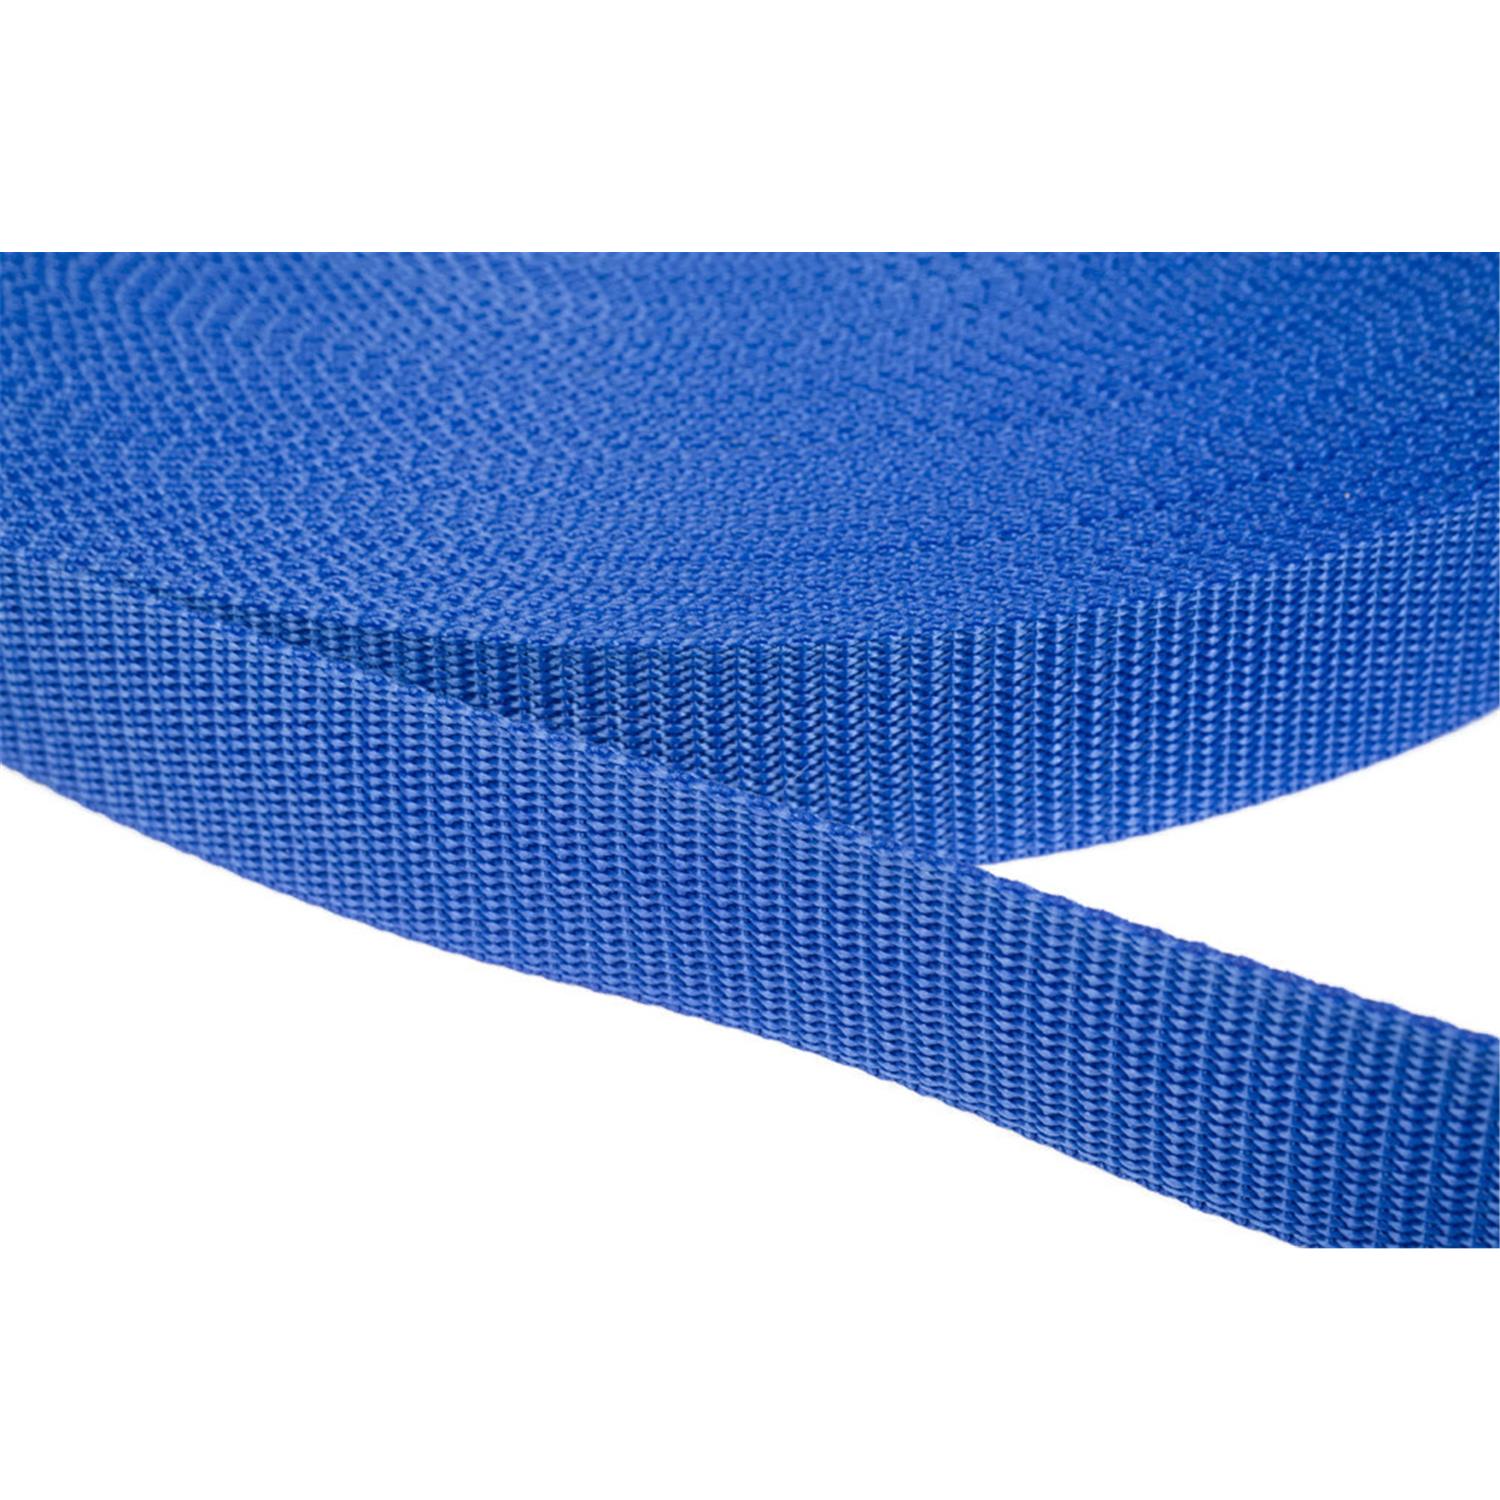 Gurtband 50mm breit aus Polypropylen in 41 Farben 26 - royalblau 6 Meter